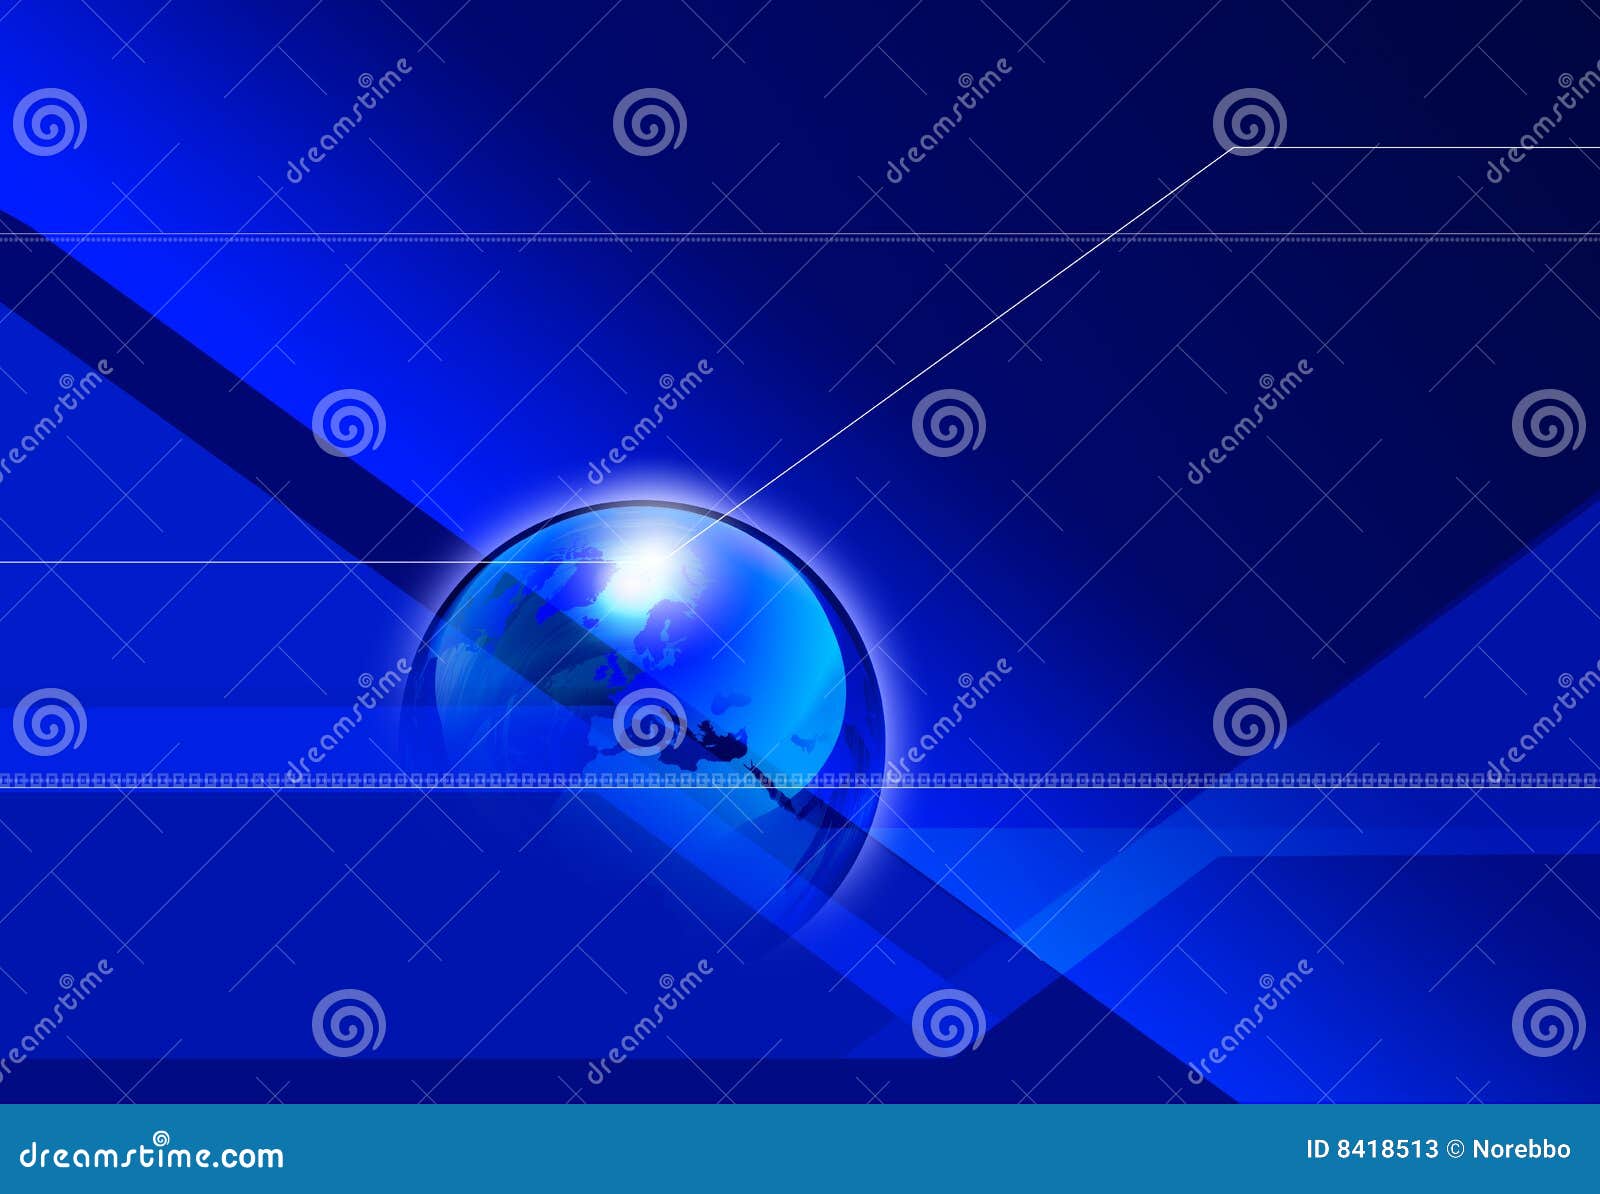 Stock Photos: Global Angular Blue Background. Image: 8418513